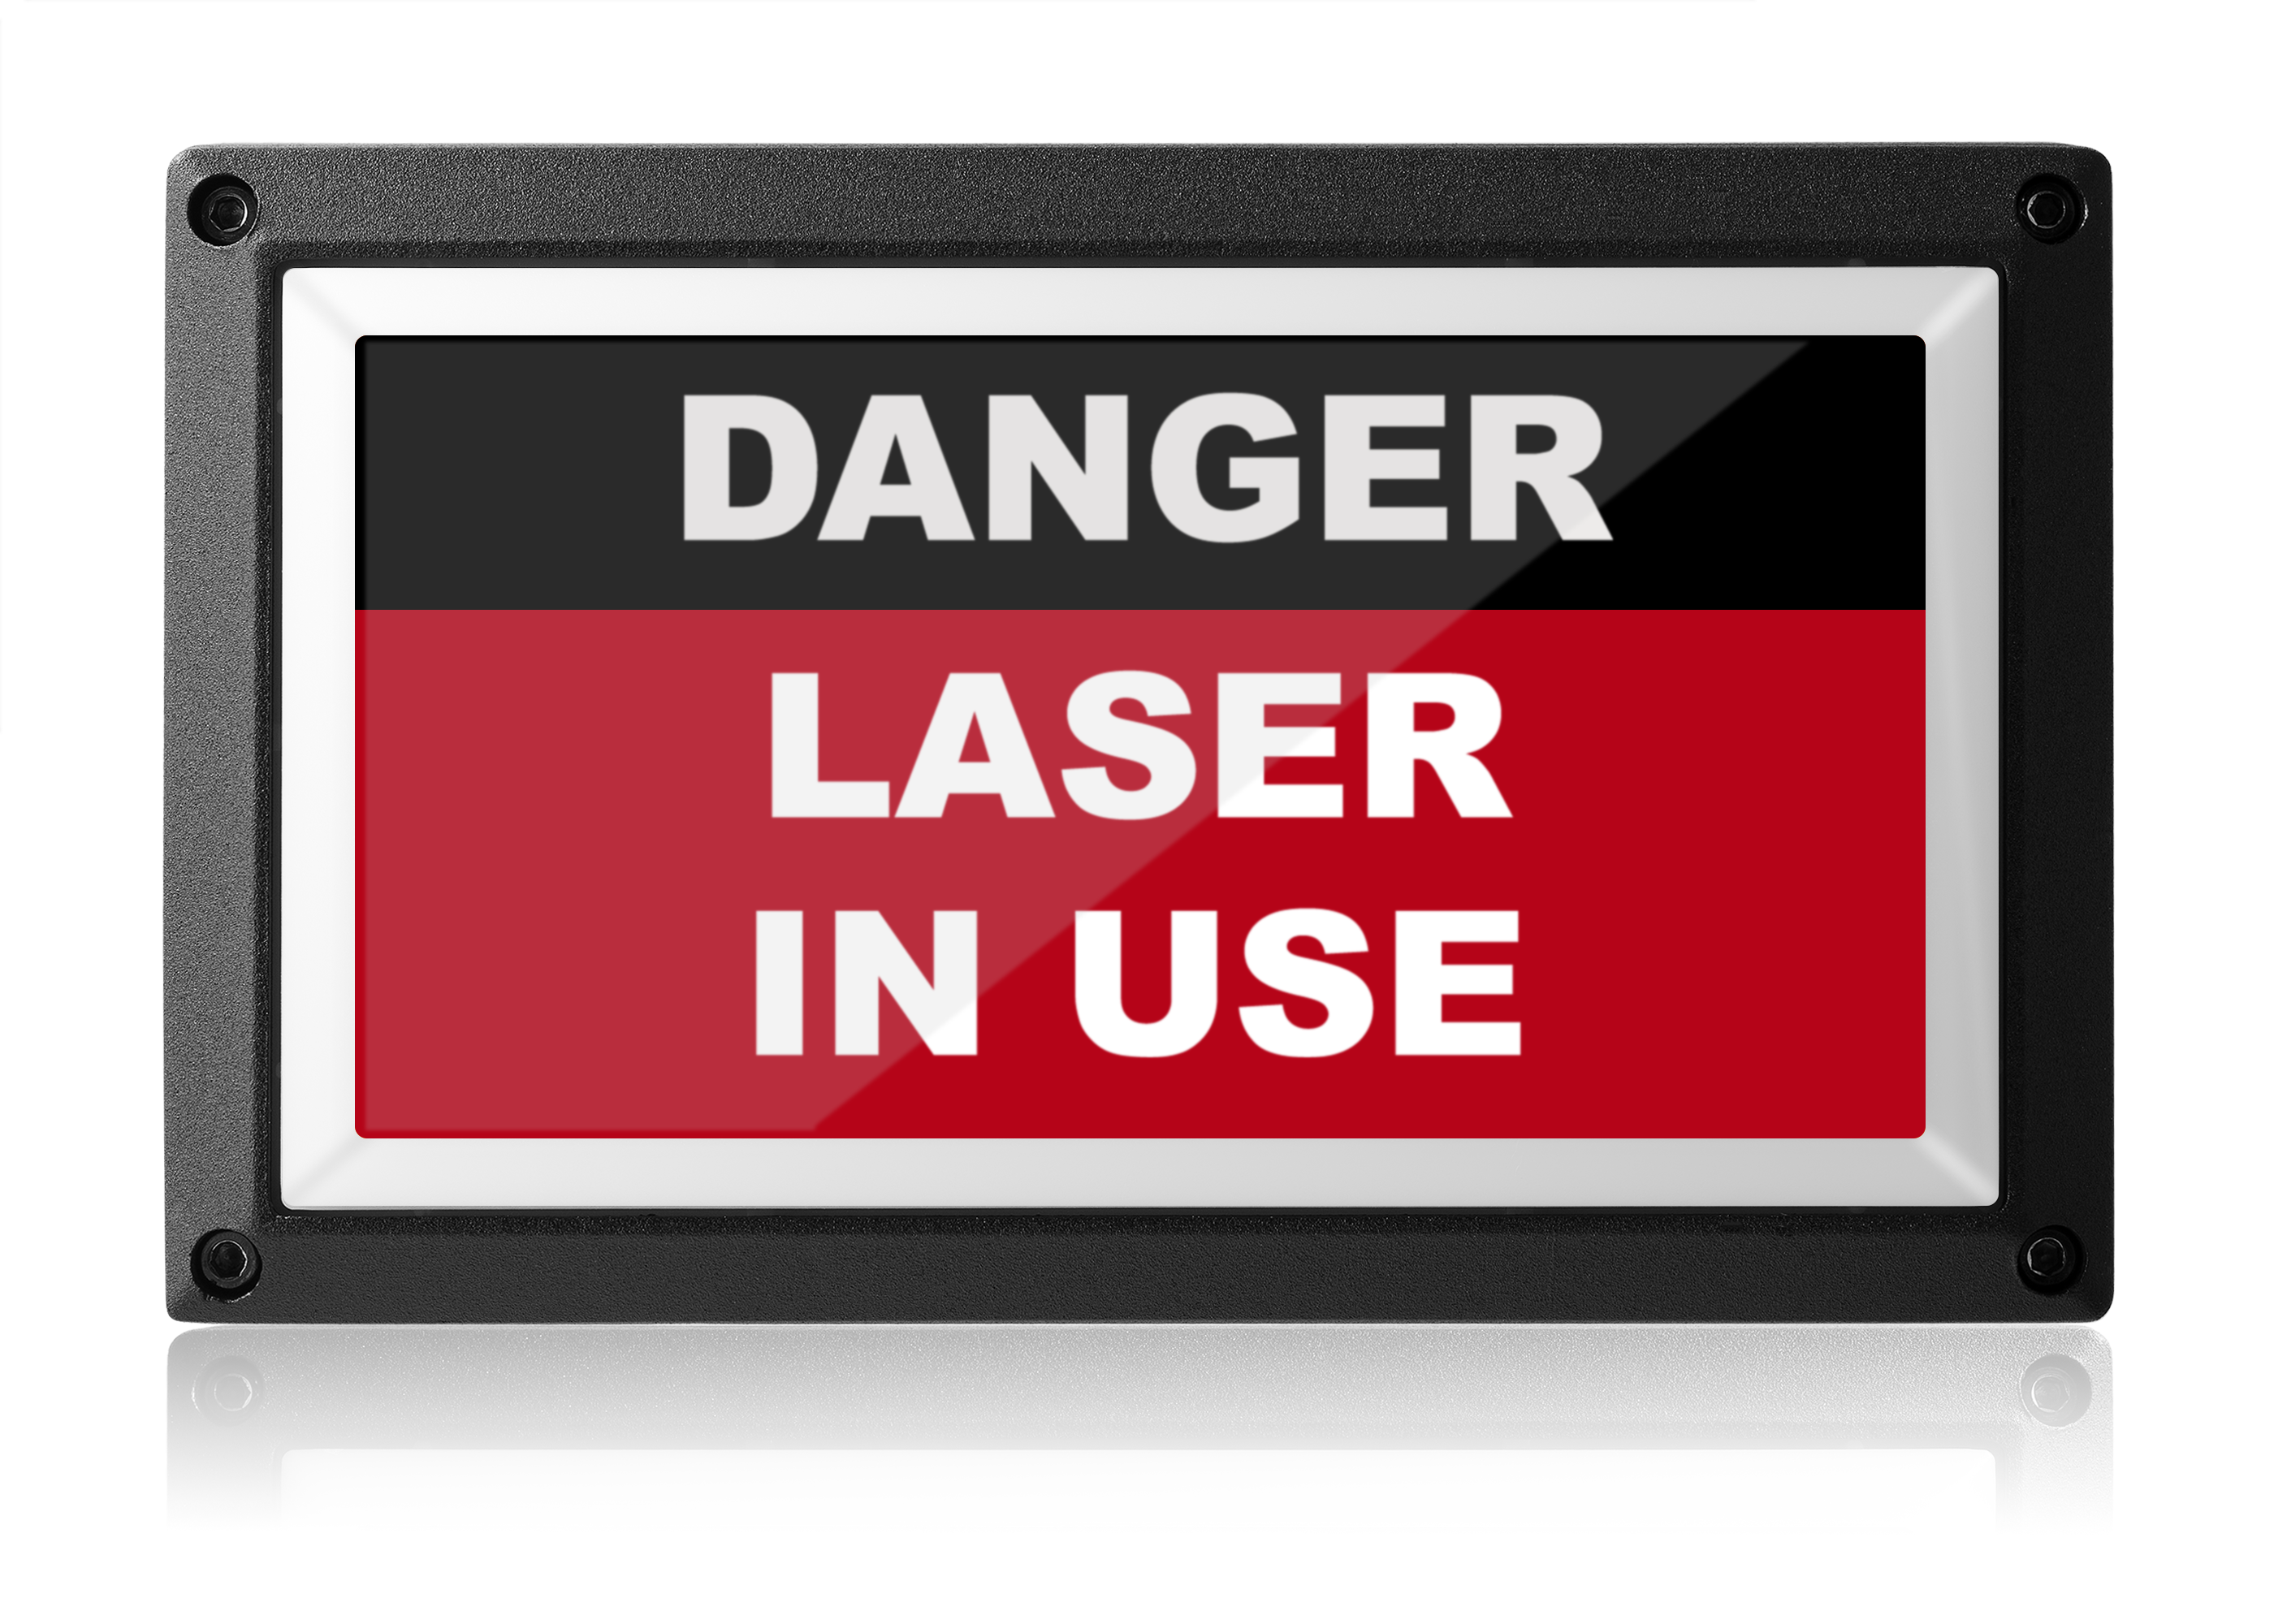 Danger Laser In Use Light - Rekall Dynamics Safety Sign-Red-Low Voltage (12-24v DC)-